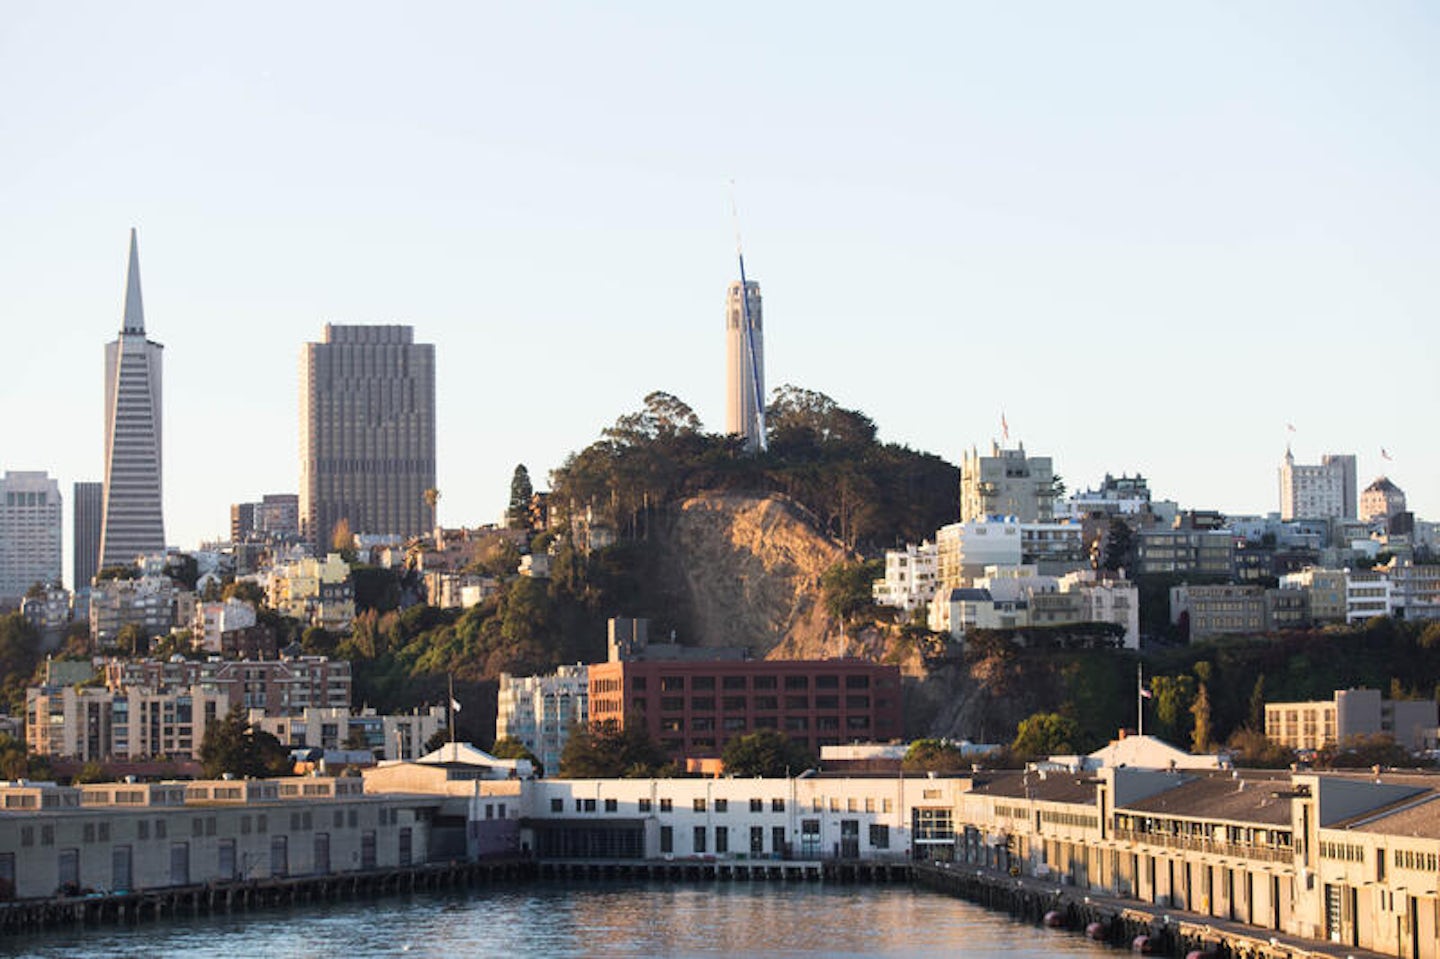 San Francisco Port